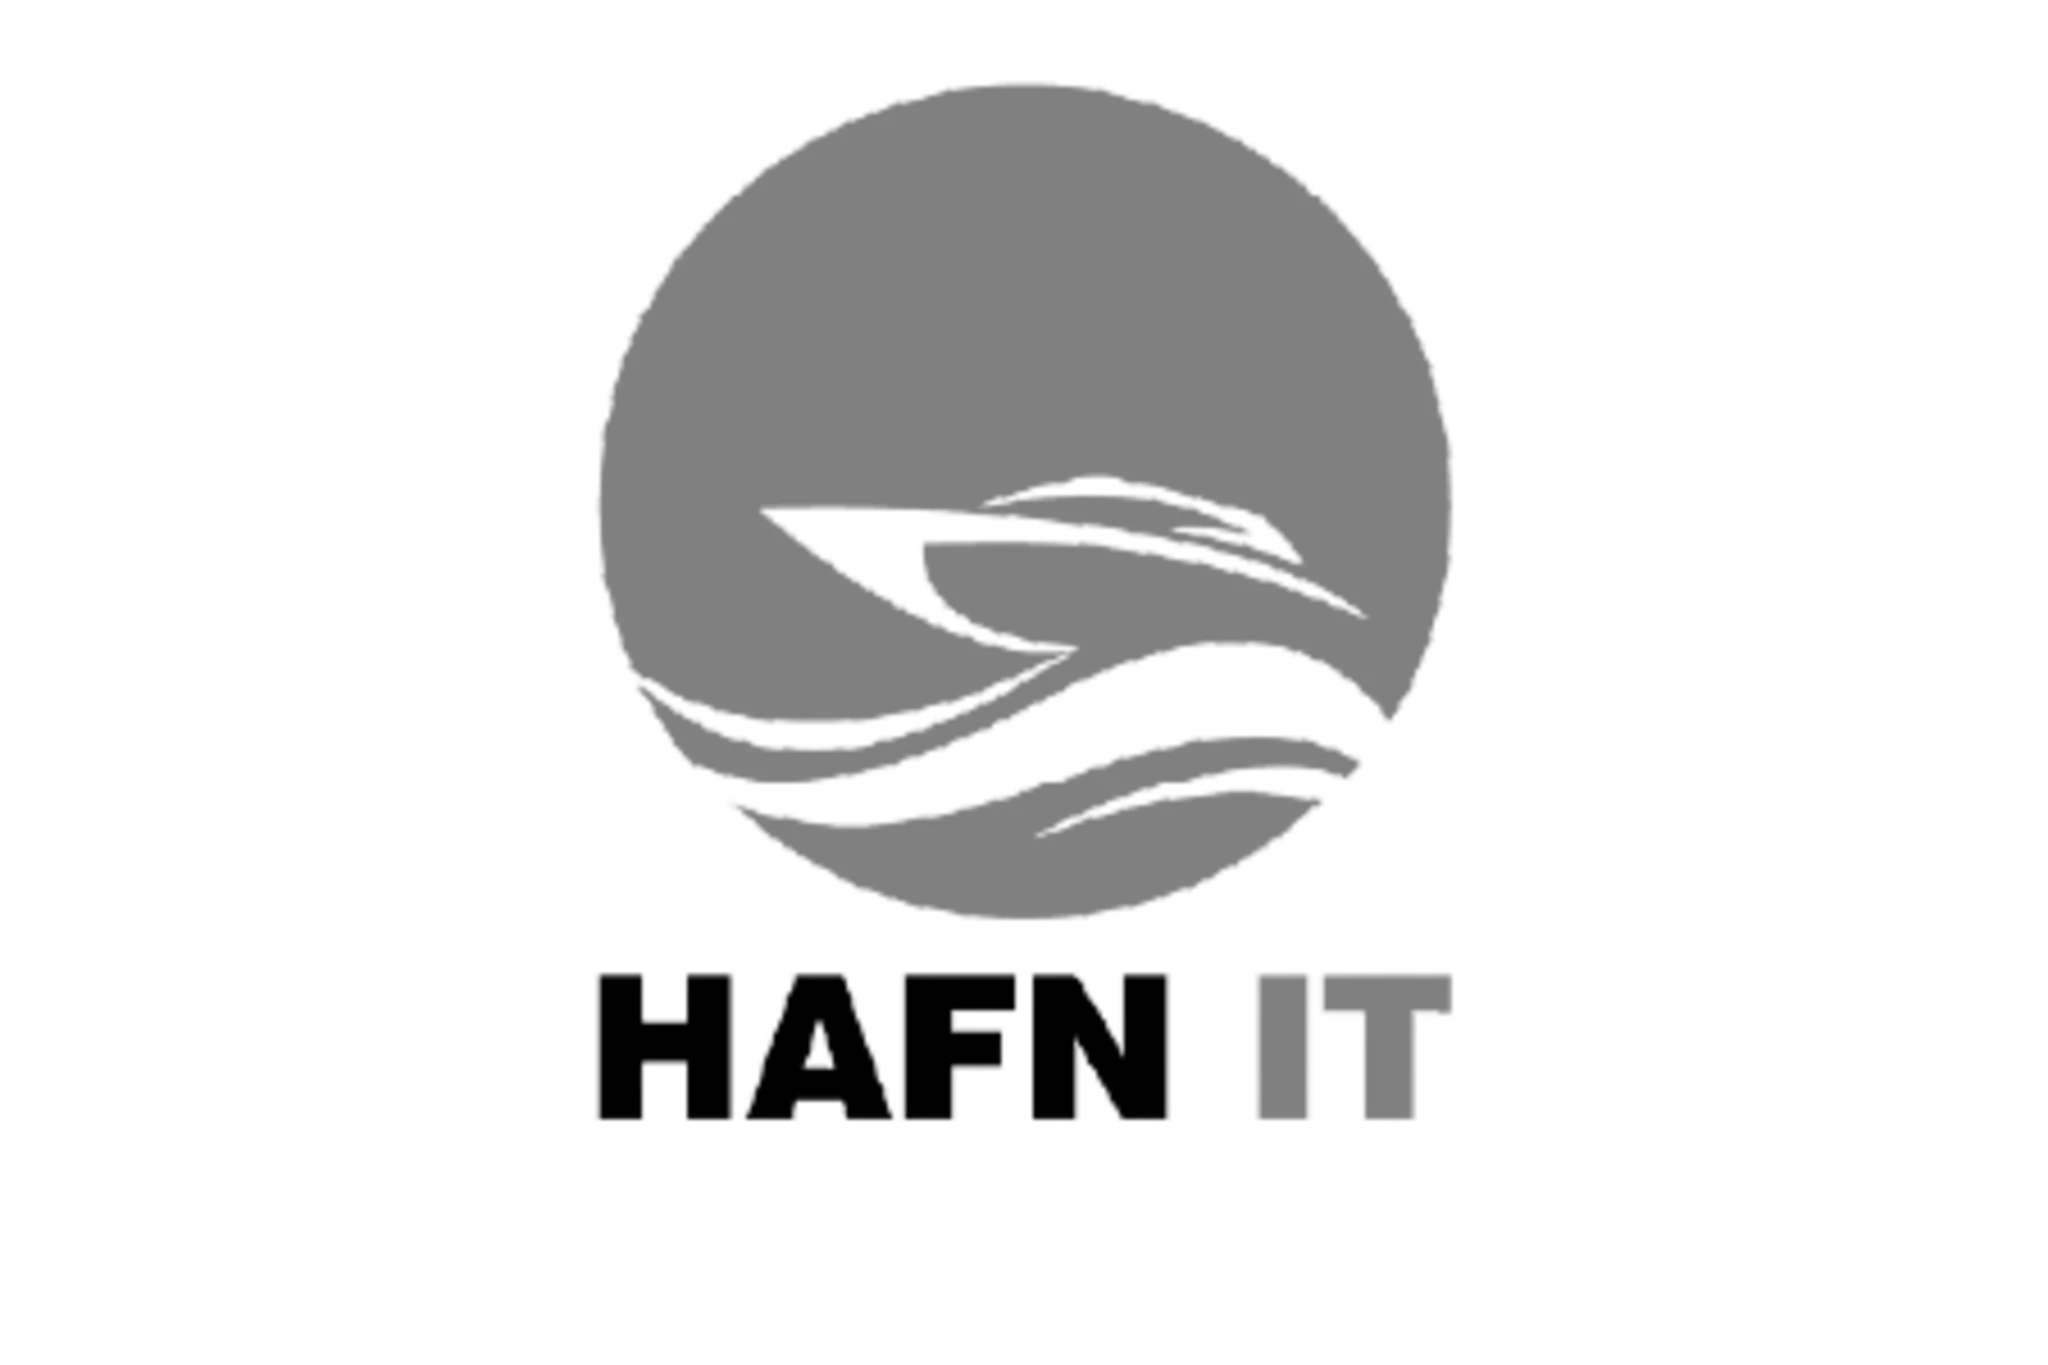 Hafn-IT Logo